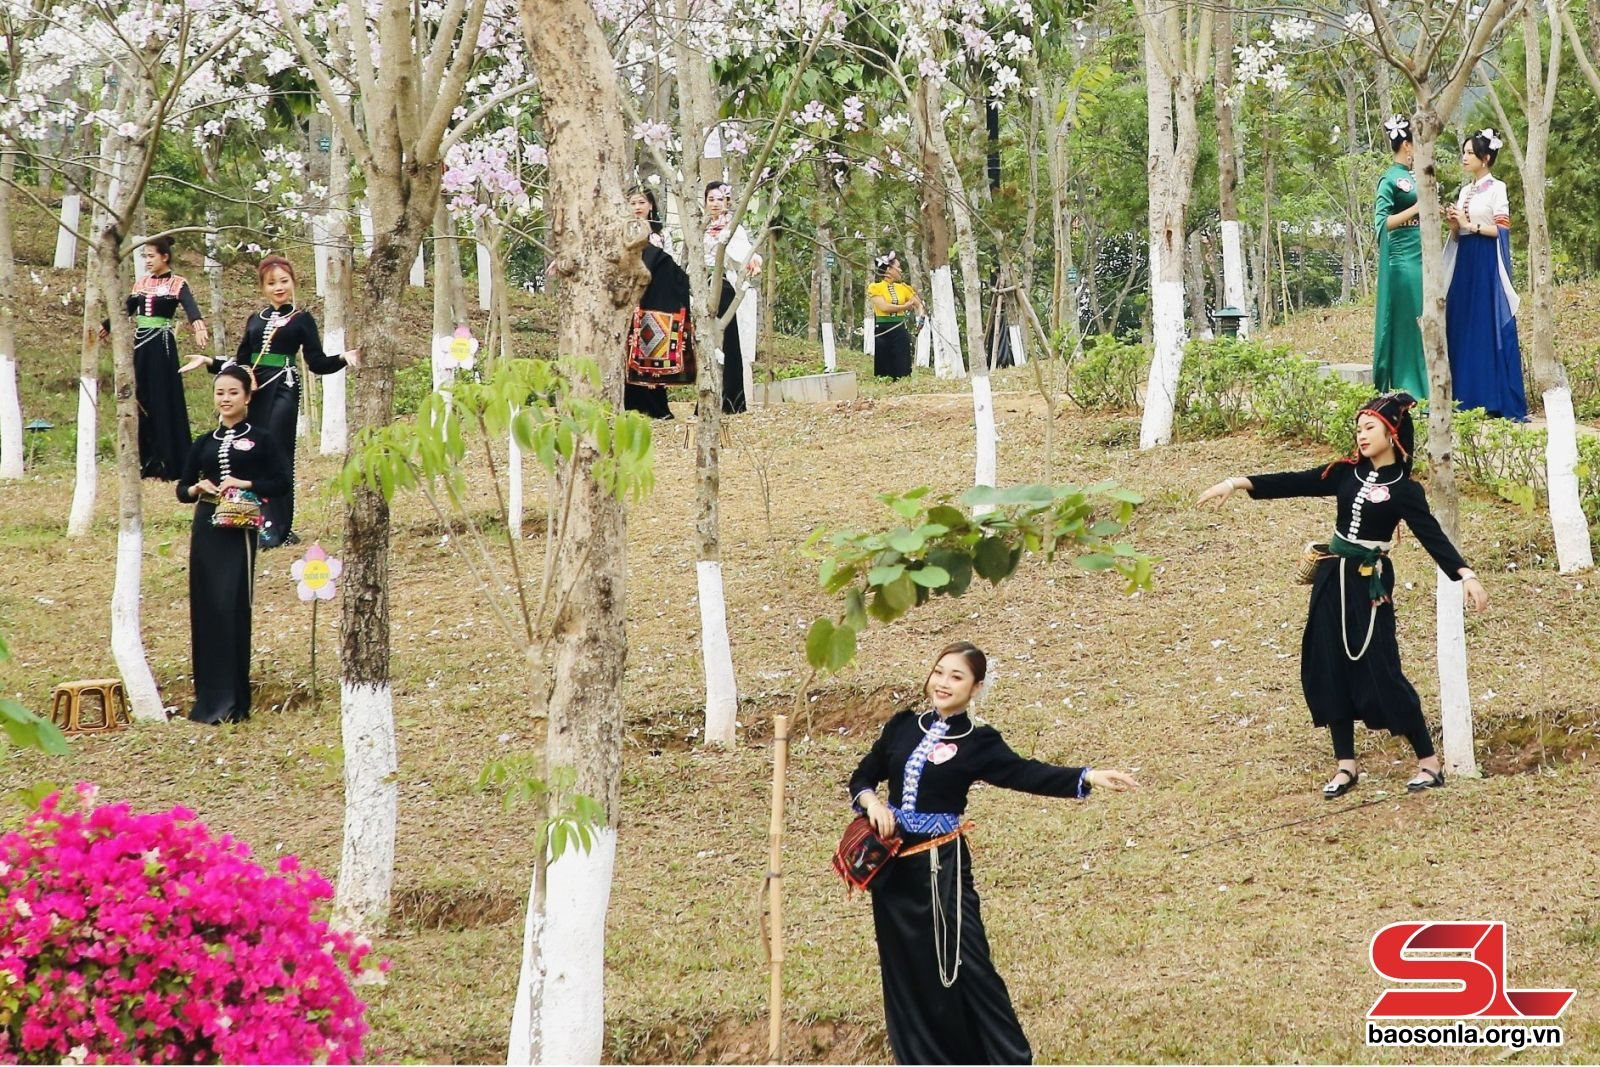 Hoa ban trong đời sống và văn hóa dân tộc Thái